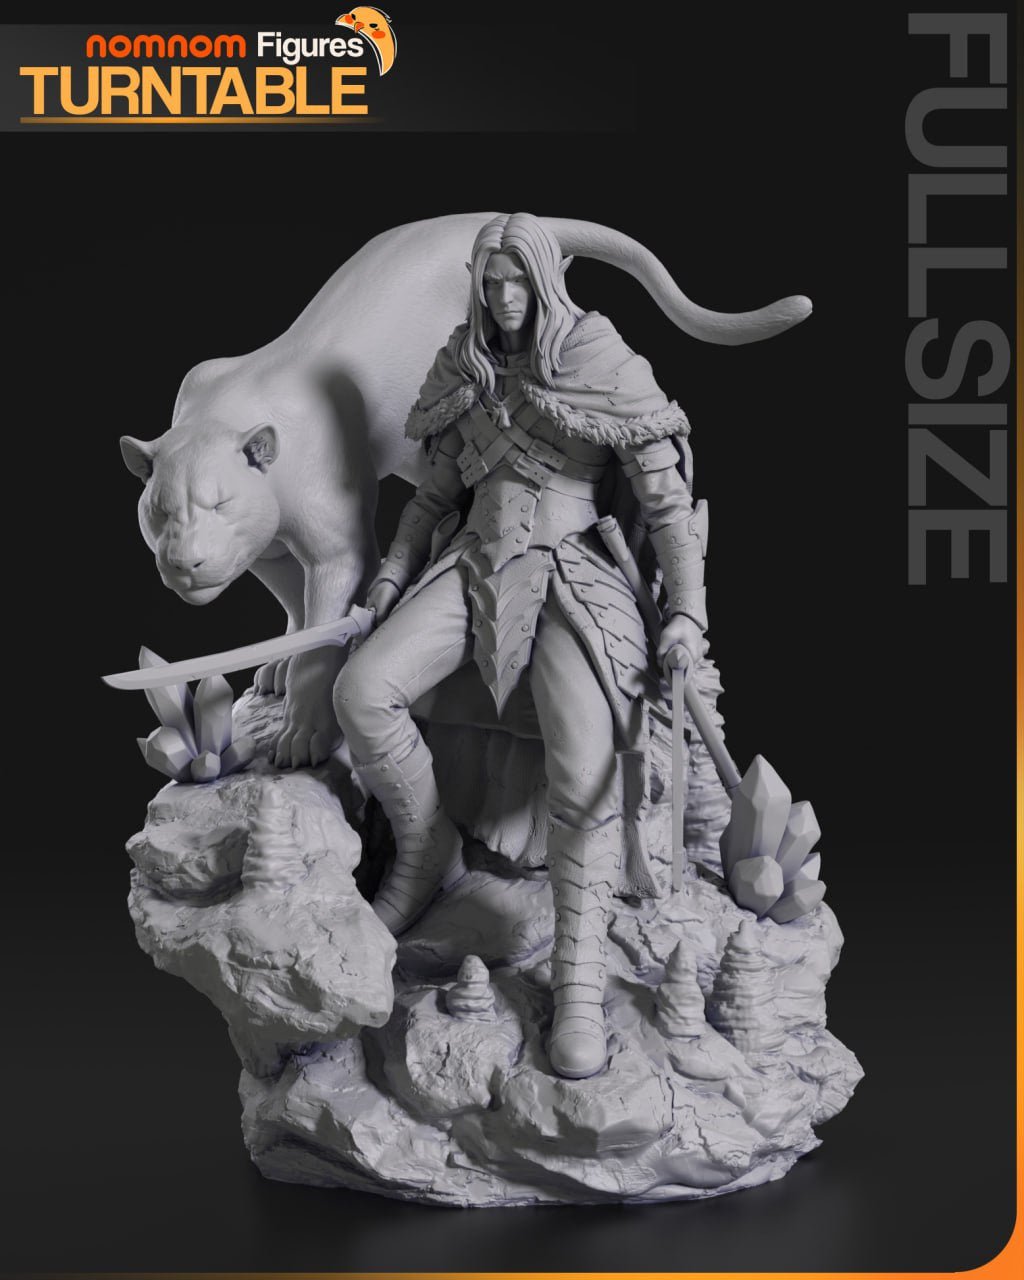 ¡Añade Nobleza y Fuerza con la Figura de Drizzt Do'Urden de Baldur's Gate! - tu tienda de impresión 3D